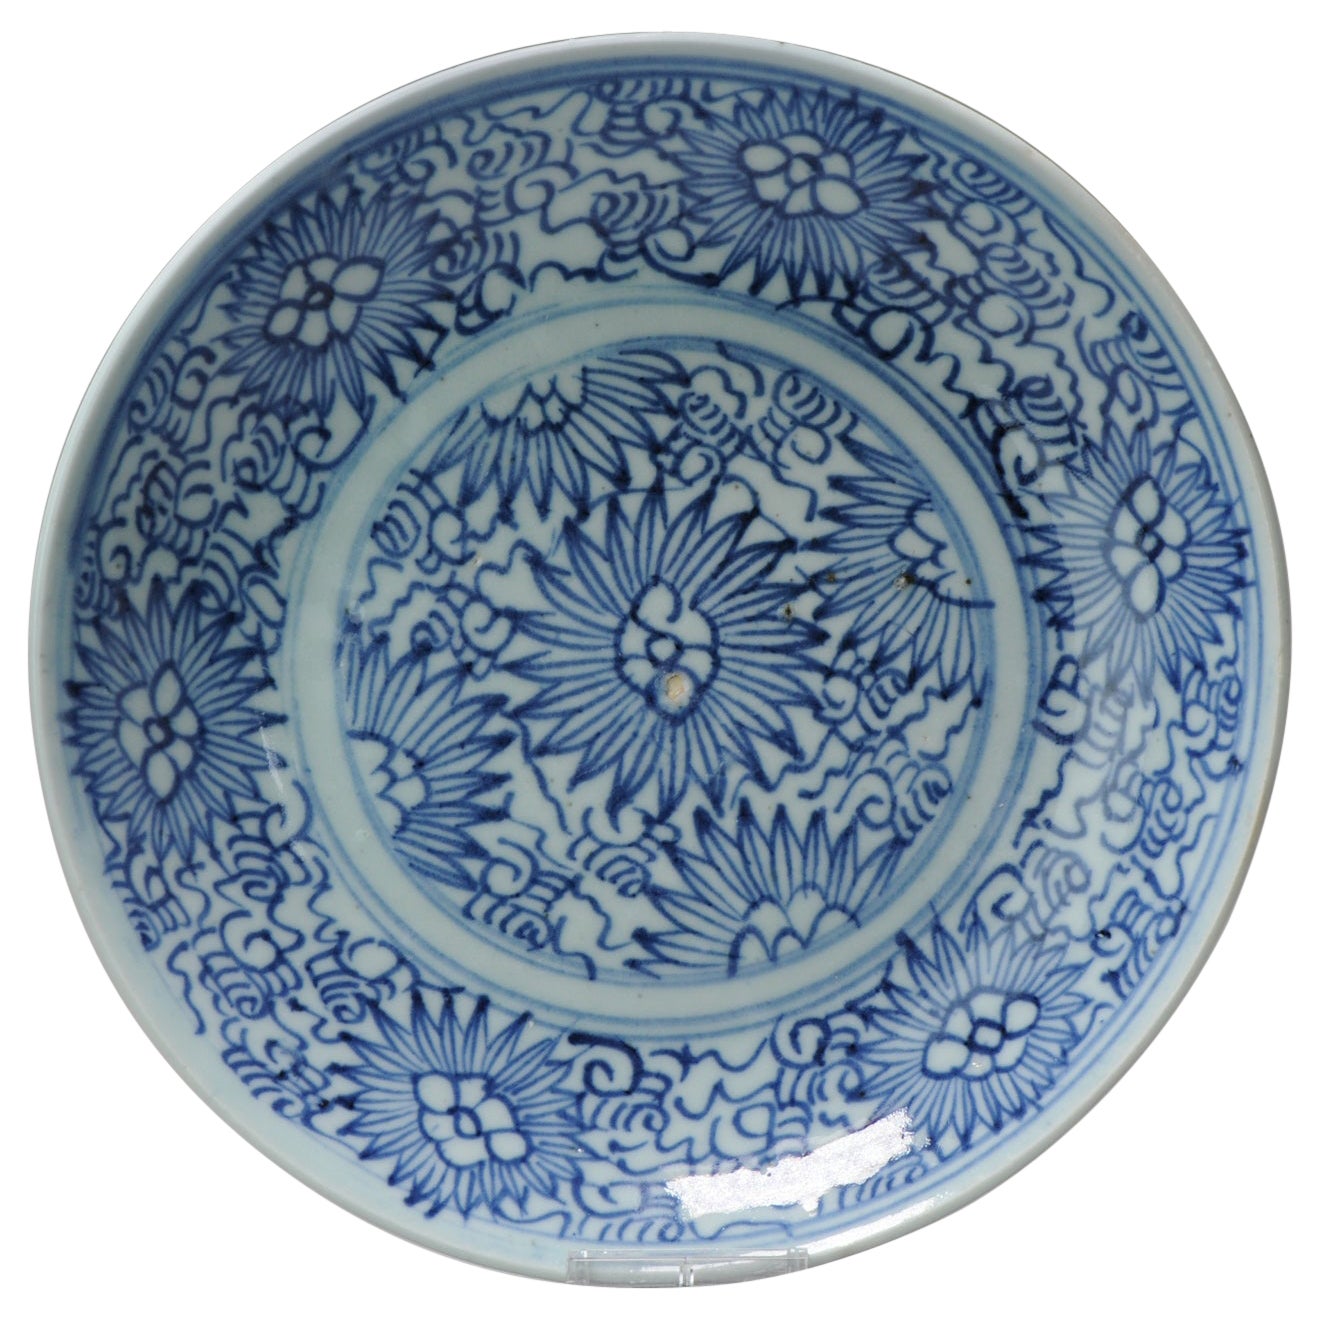 Chinesisches Porzellan Küche, Aster-Muster, Ching Qing-Teller, Südostasien, 19. Jahrhundert